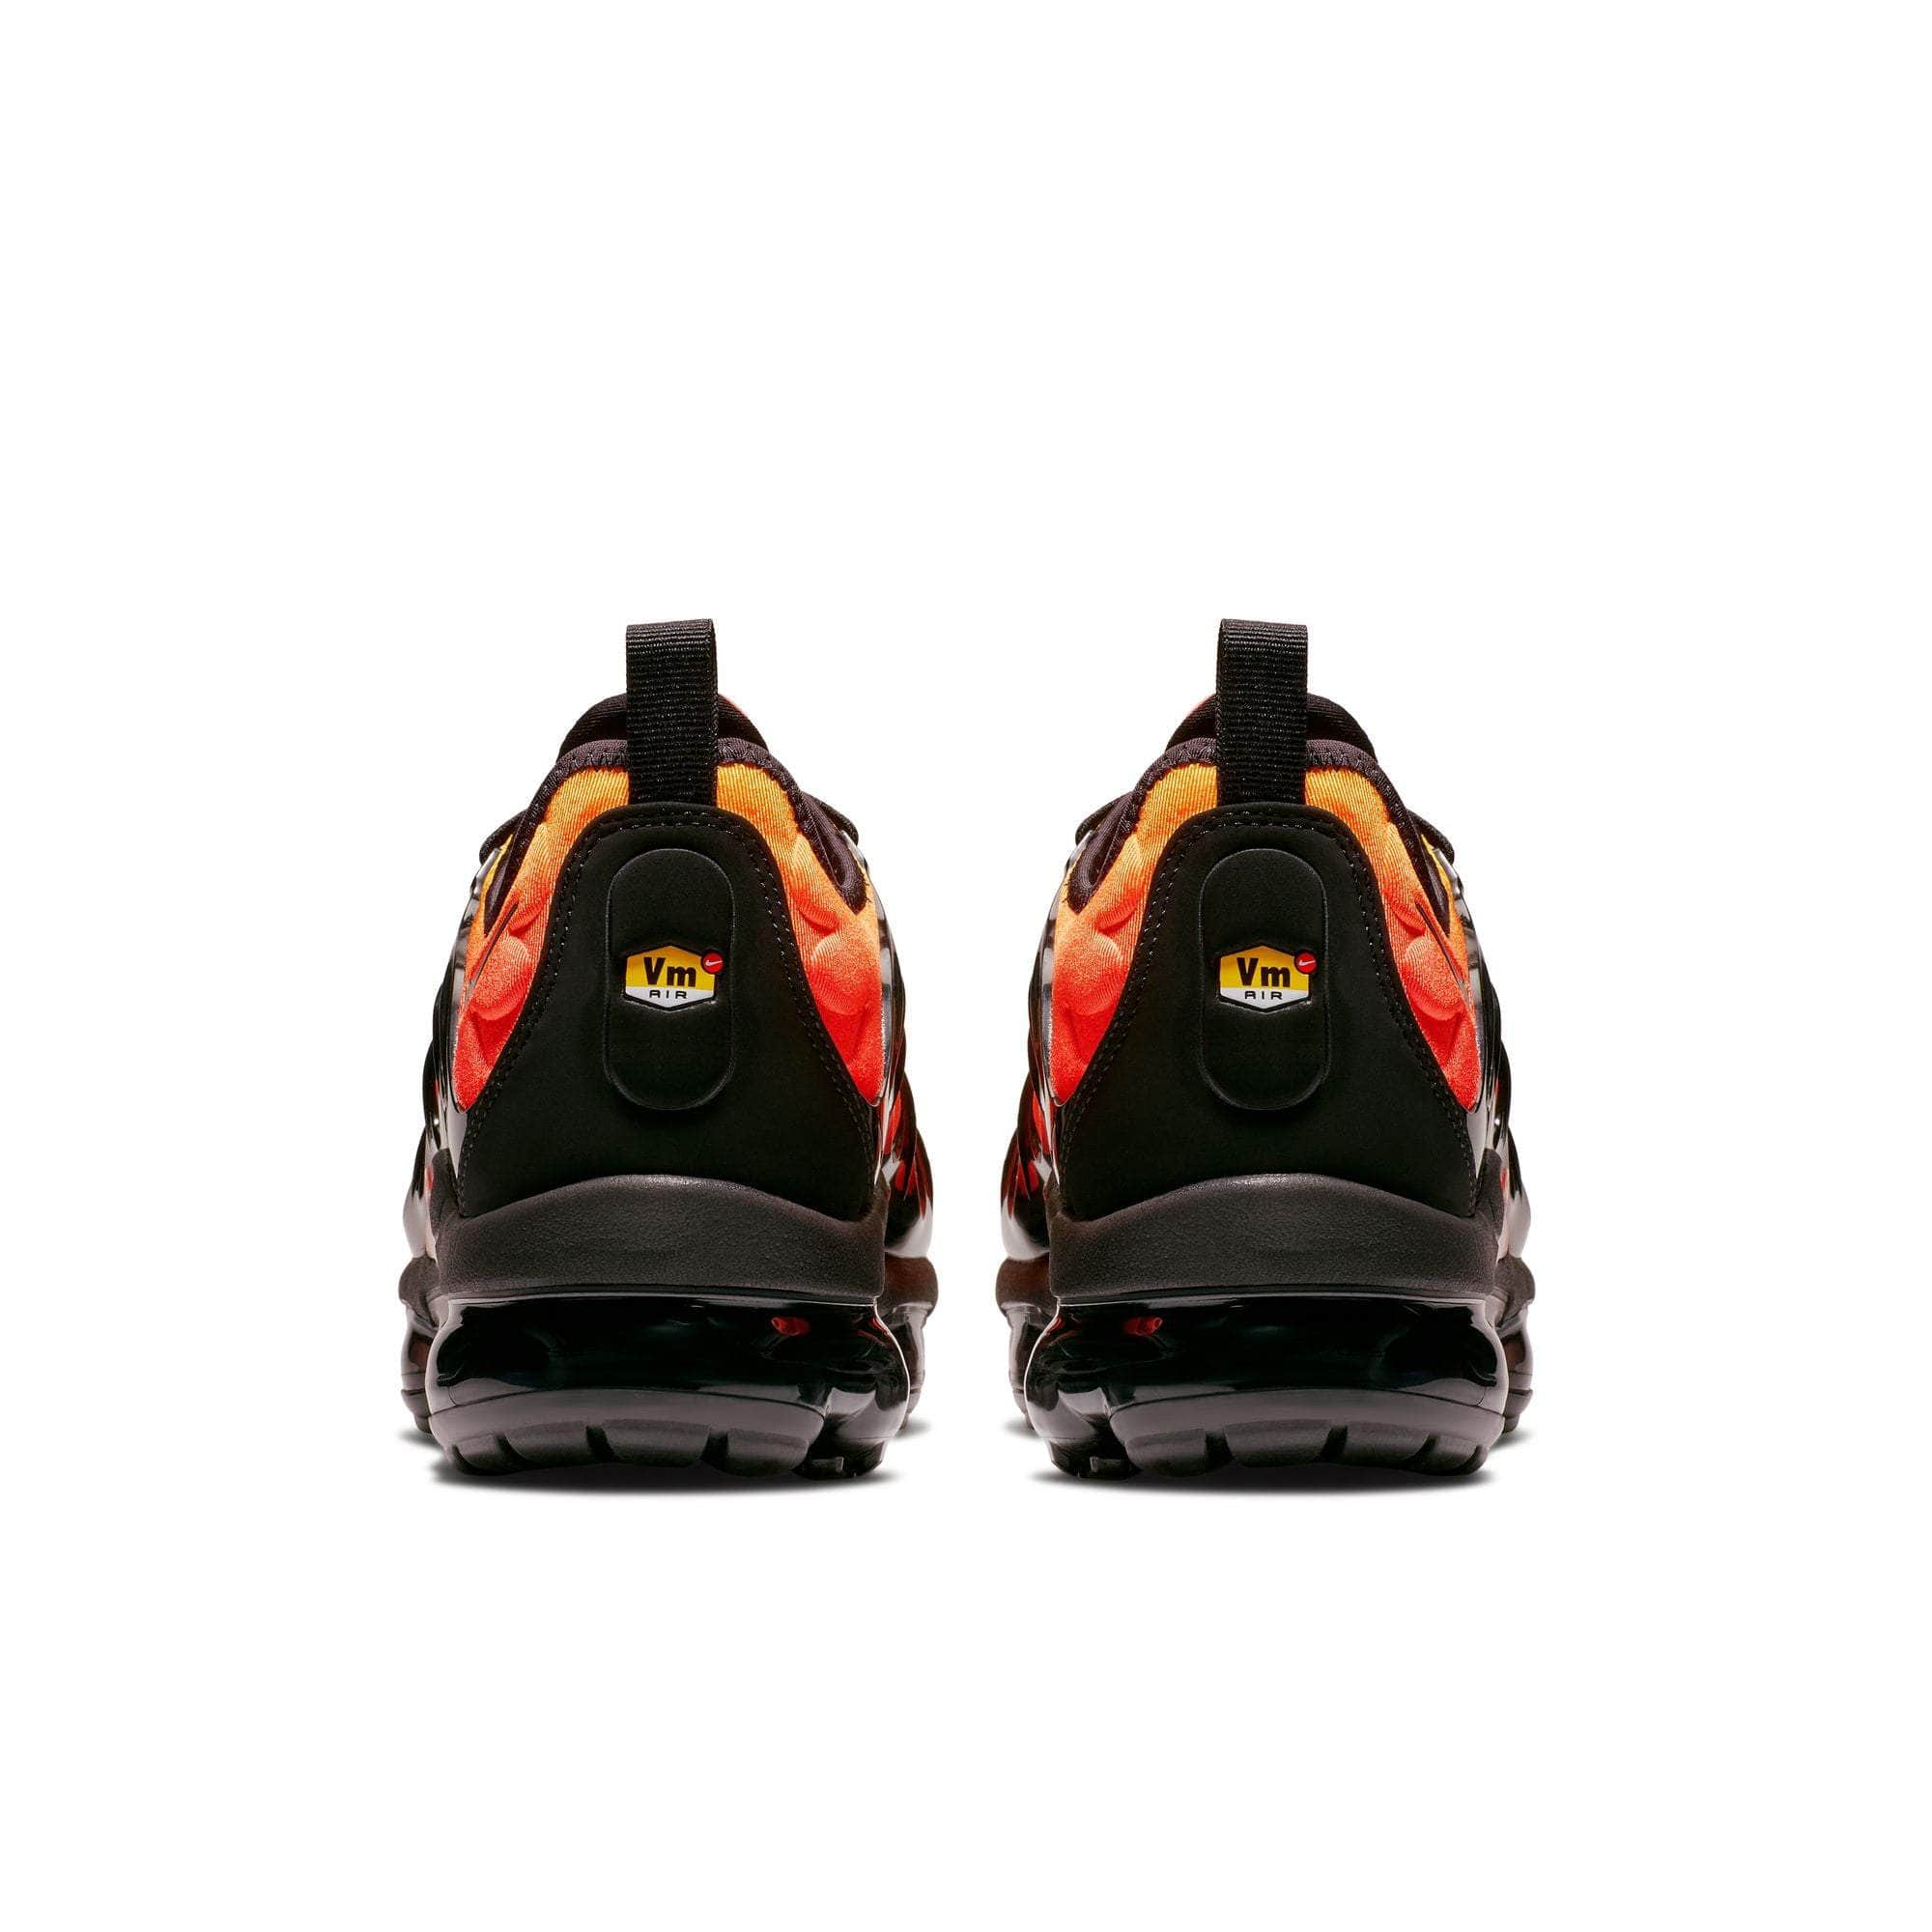 NIKE FOOTWEAR Nike Air Vapormax Plus 'Sunset Orange' - Men's